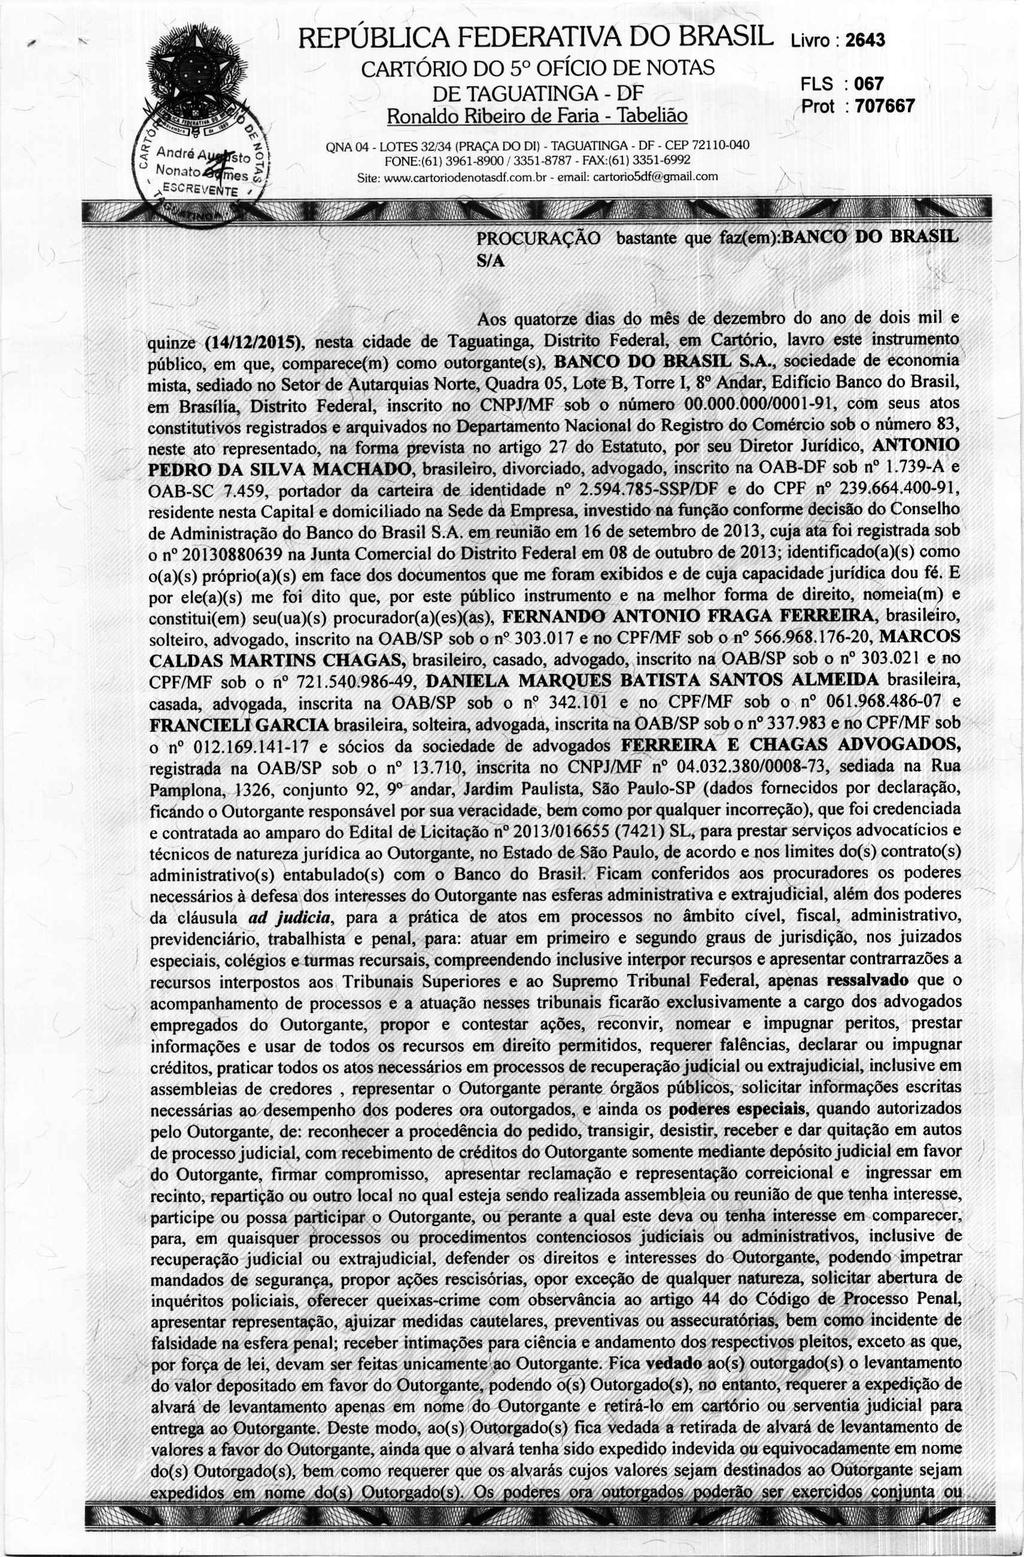 fls. 100 Este documento é cópia do original, assinado digitalmente por MARCOS CALDAS MARTINS CHAGAS e Tribunal de Justica Sao Paulo, protocolado em 11/04/2016 às 13:39, sob o número